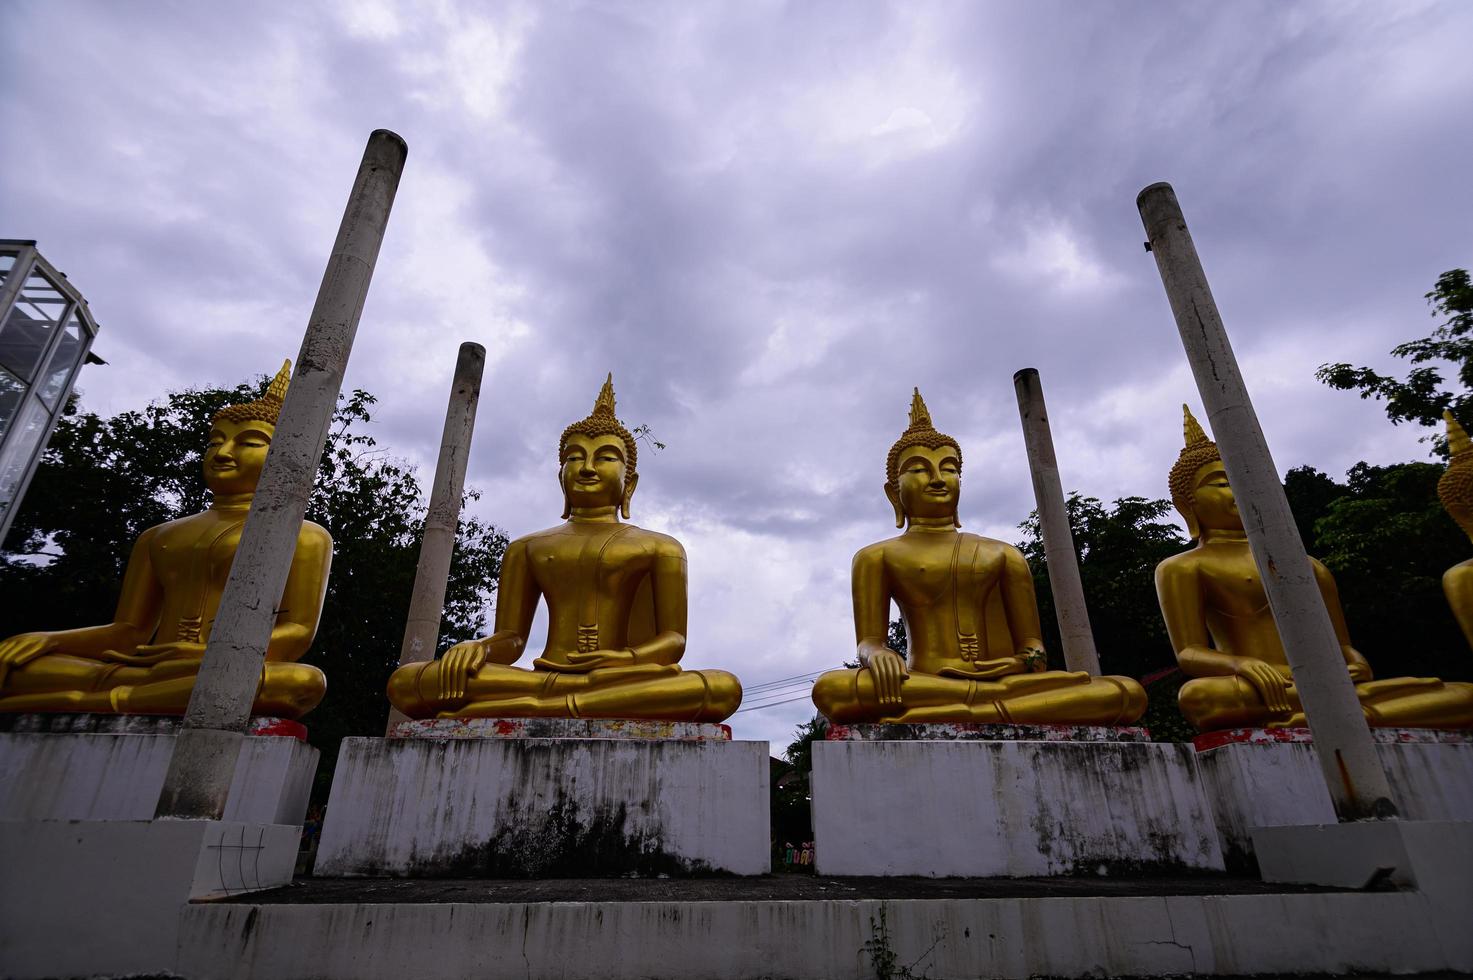 Watpapromyan tempio buddista rispetto, calma la mente. in thailandia, provincia di chachoengsao foto